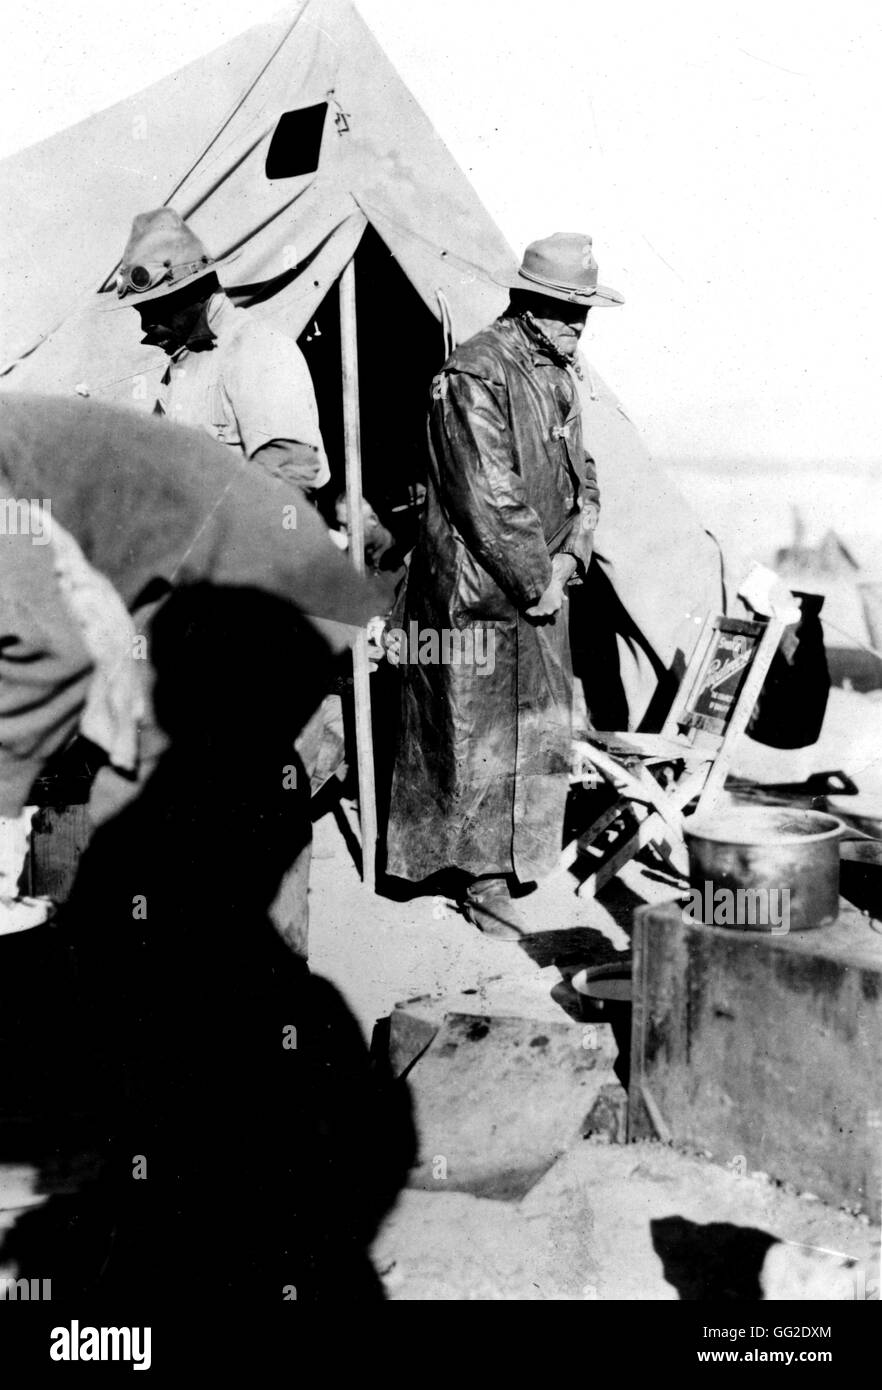 Mexikanische Revolution. General Pershing, Oberbefehlshaber der Expedition geschickt in mexikanisches Gebiet zu versuchen und zu ergreifen Pancho Villa im März 1916 1916 Mexiko Washington, D.C. Library of Congress Stockfoto